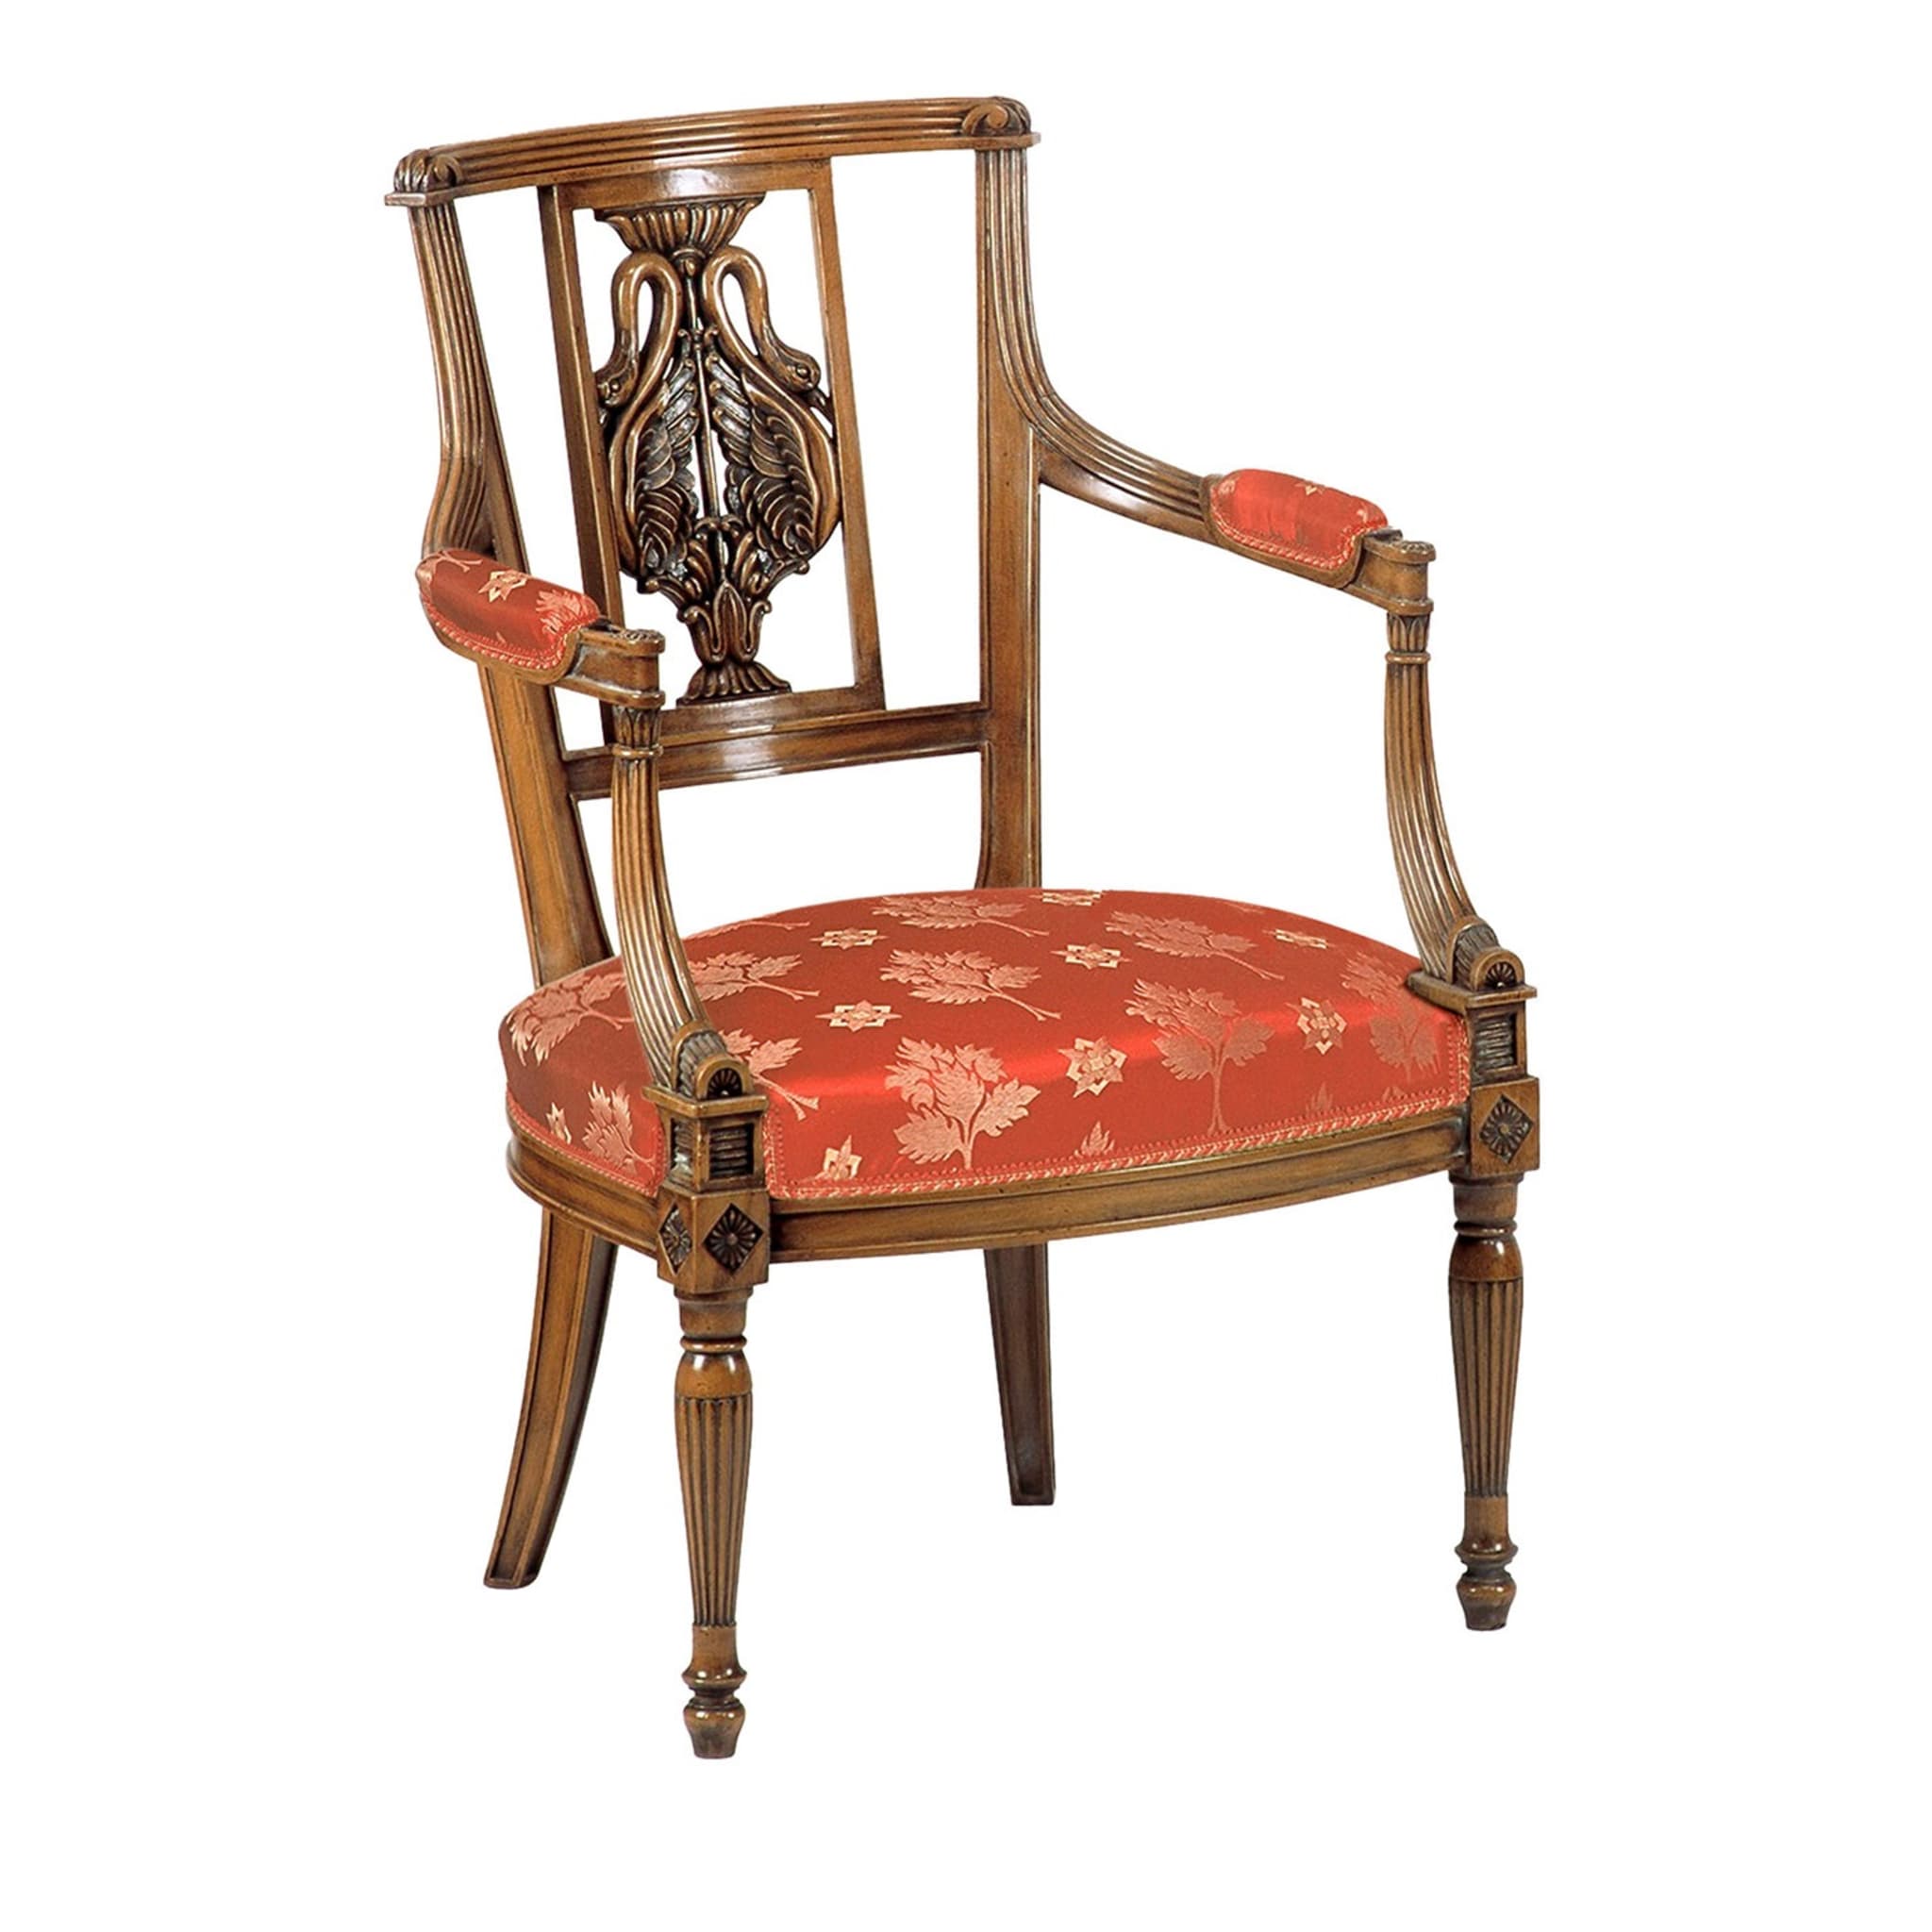 Sedia con schienale zoomorfo in stile impero francese con braccioli - Vista principale